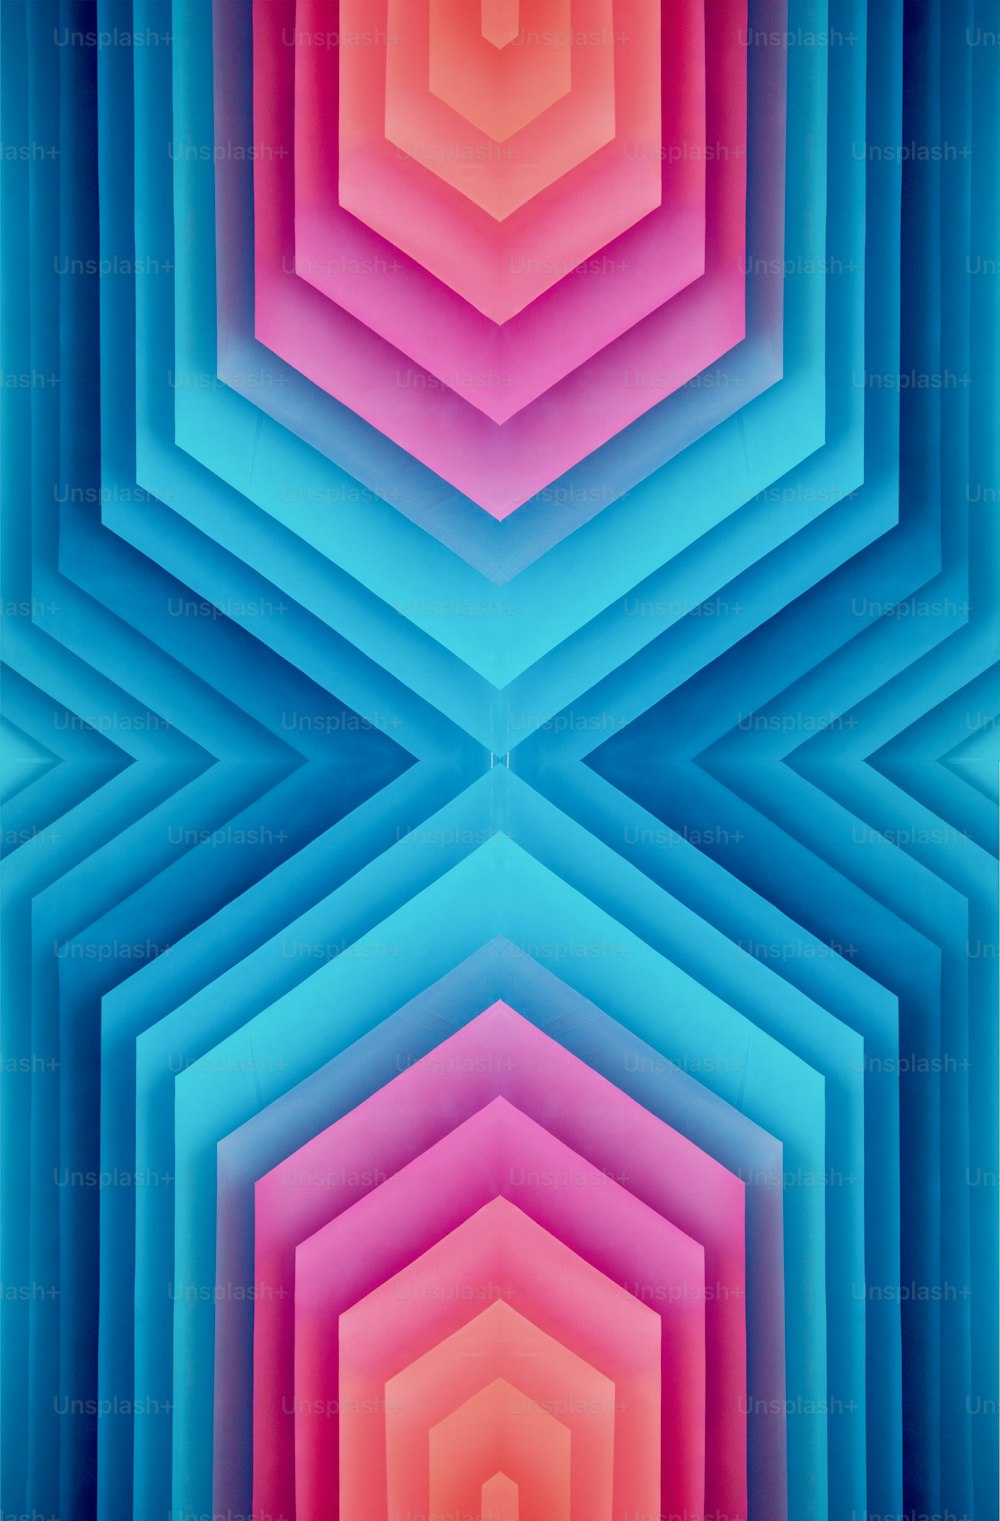 Un fondo colorido con un patrón hexagonal